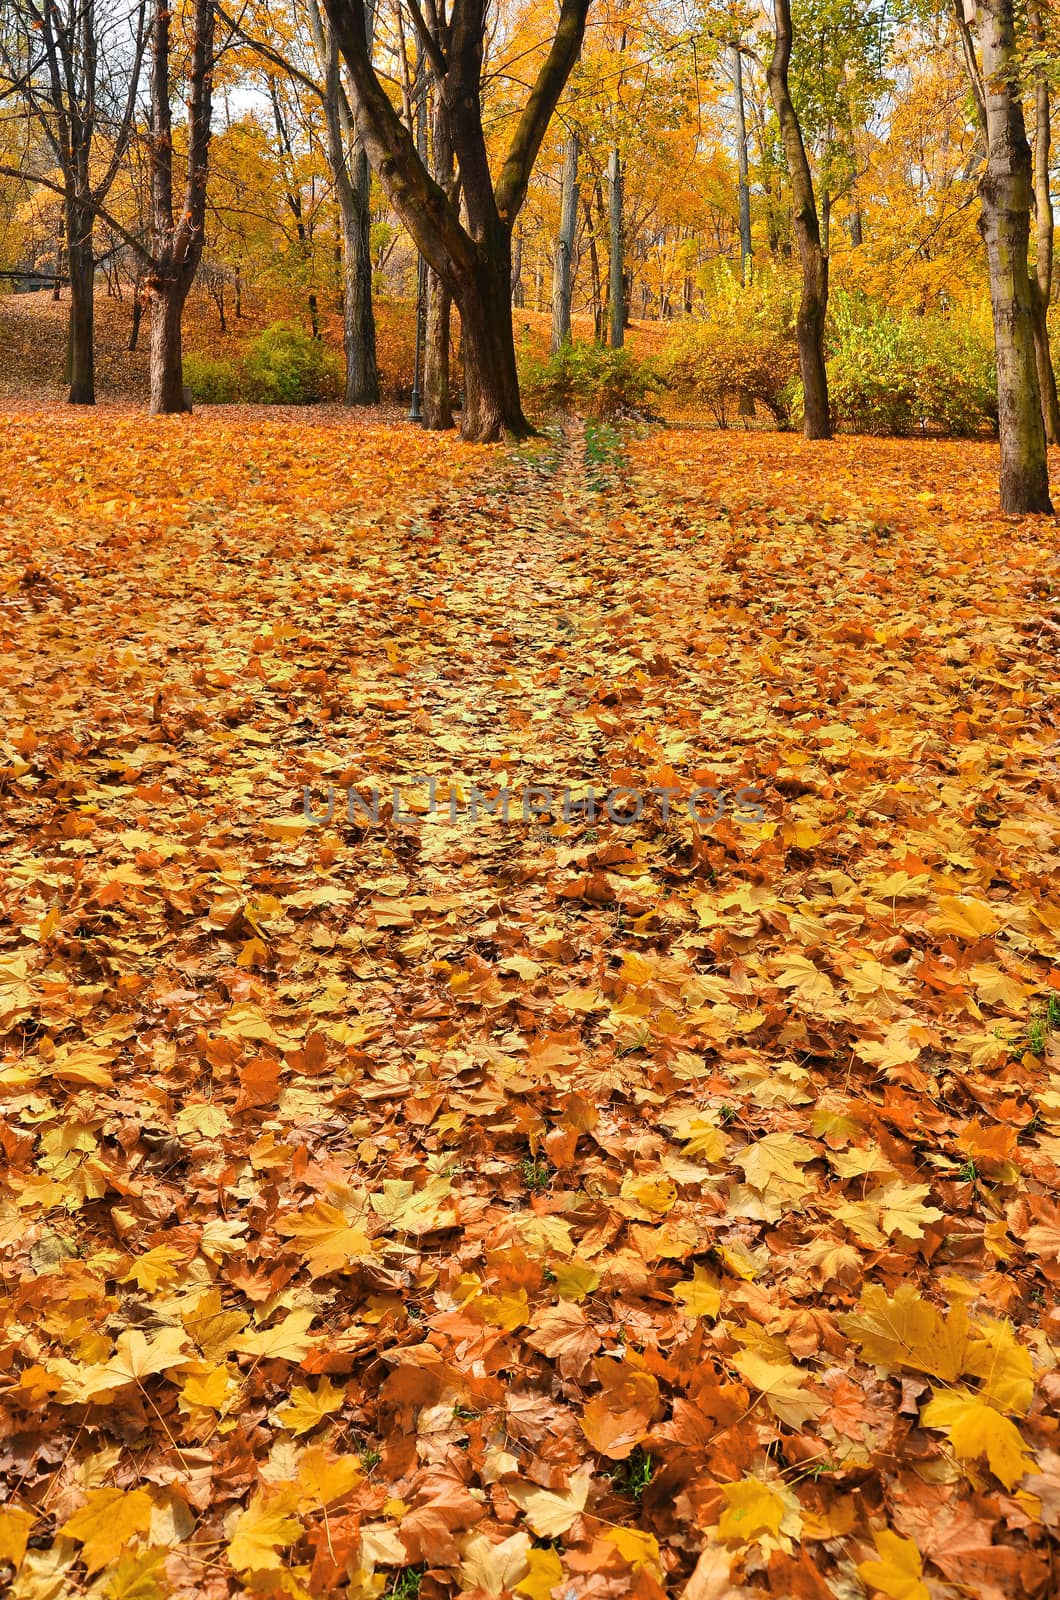 Golden autumn in November by Vectorex